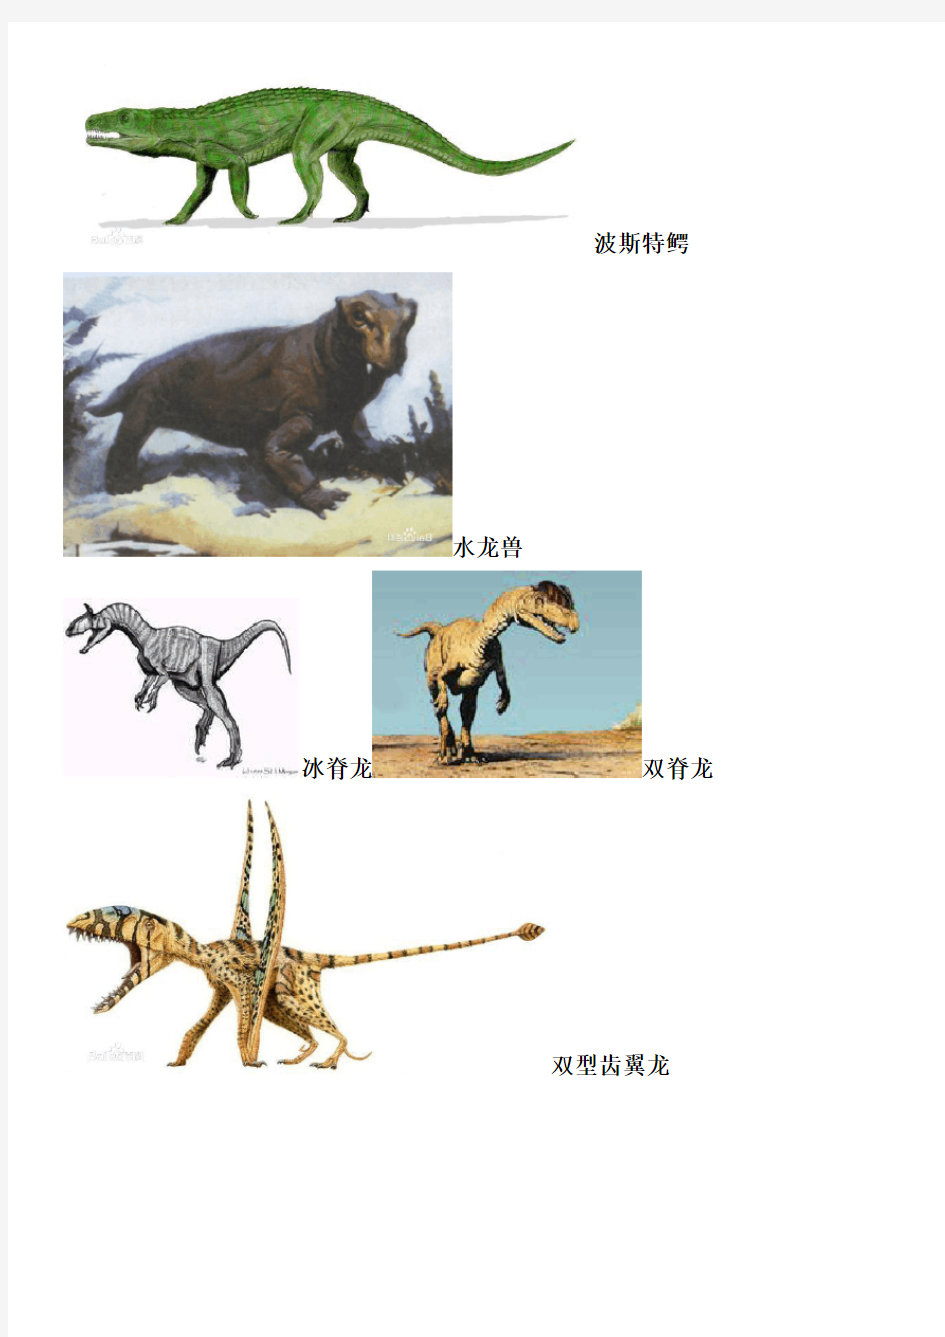 恐龙名字以及图片